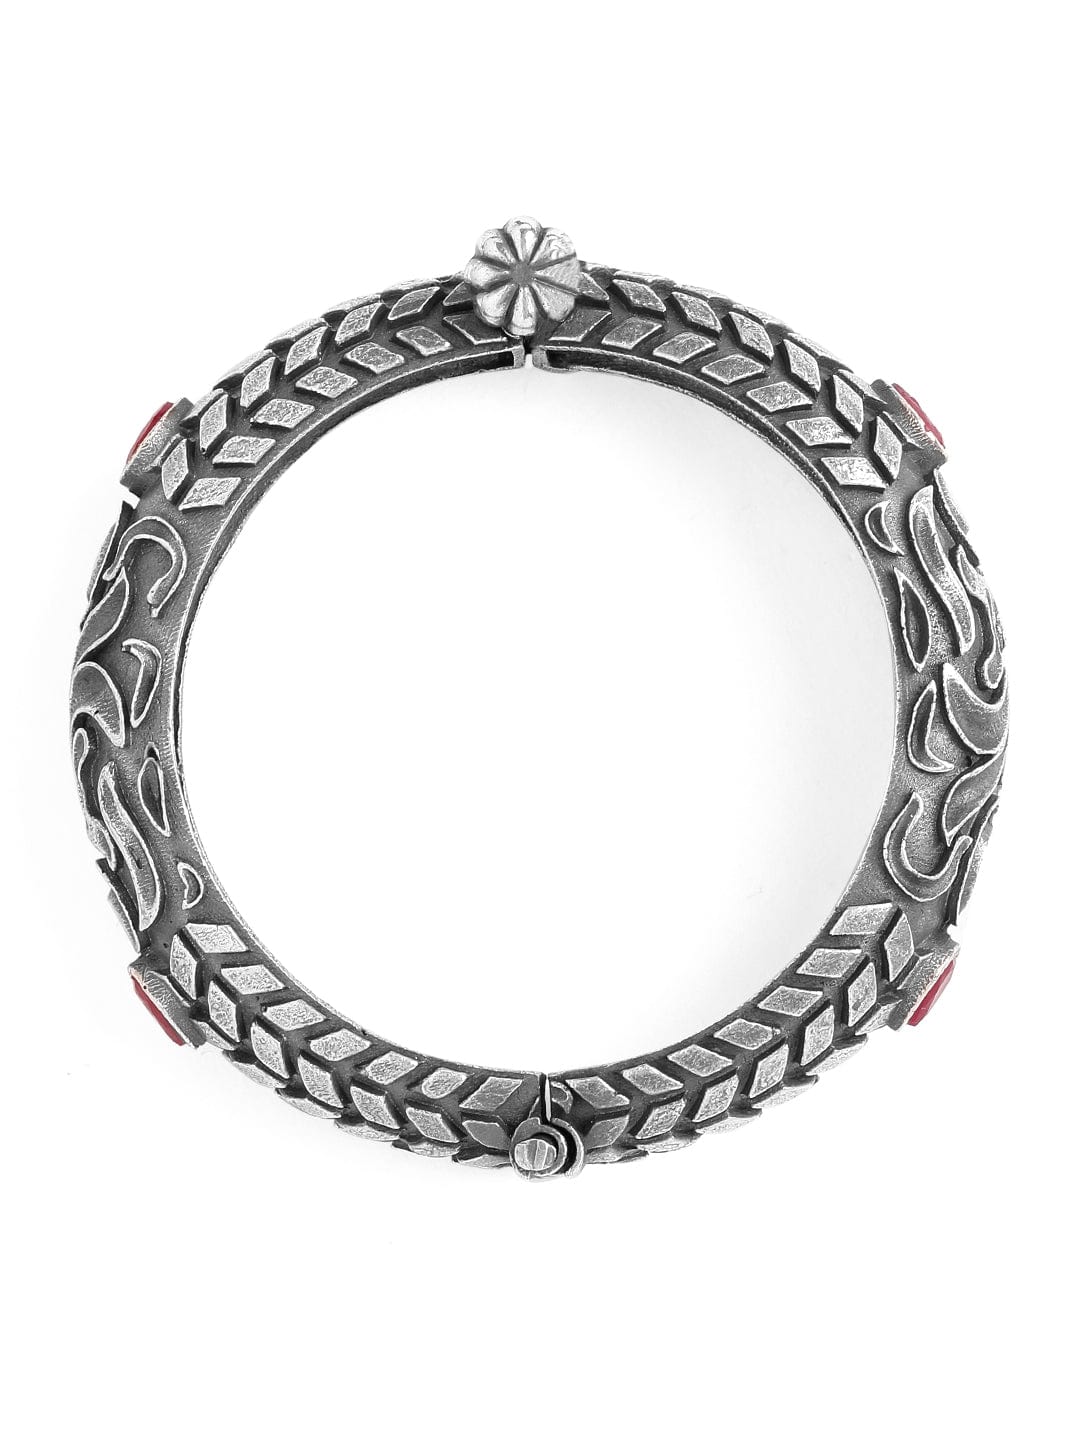 Rubans Oxidised Silver Ruby Stone Studded Bracelet. Bangles & Bracelets